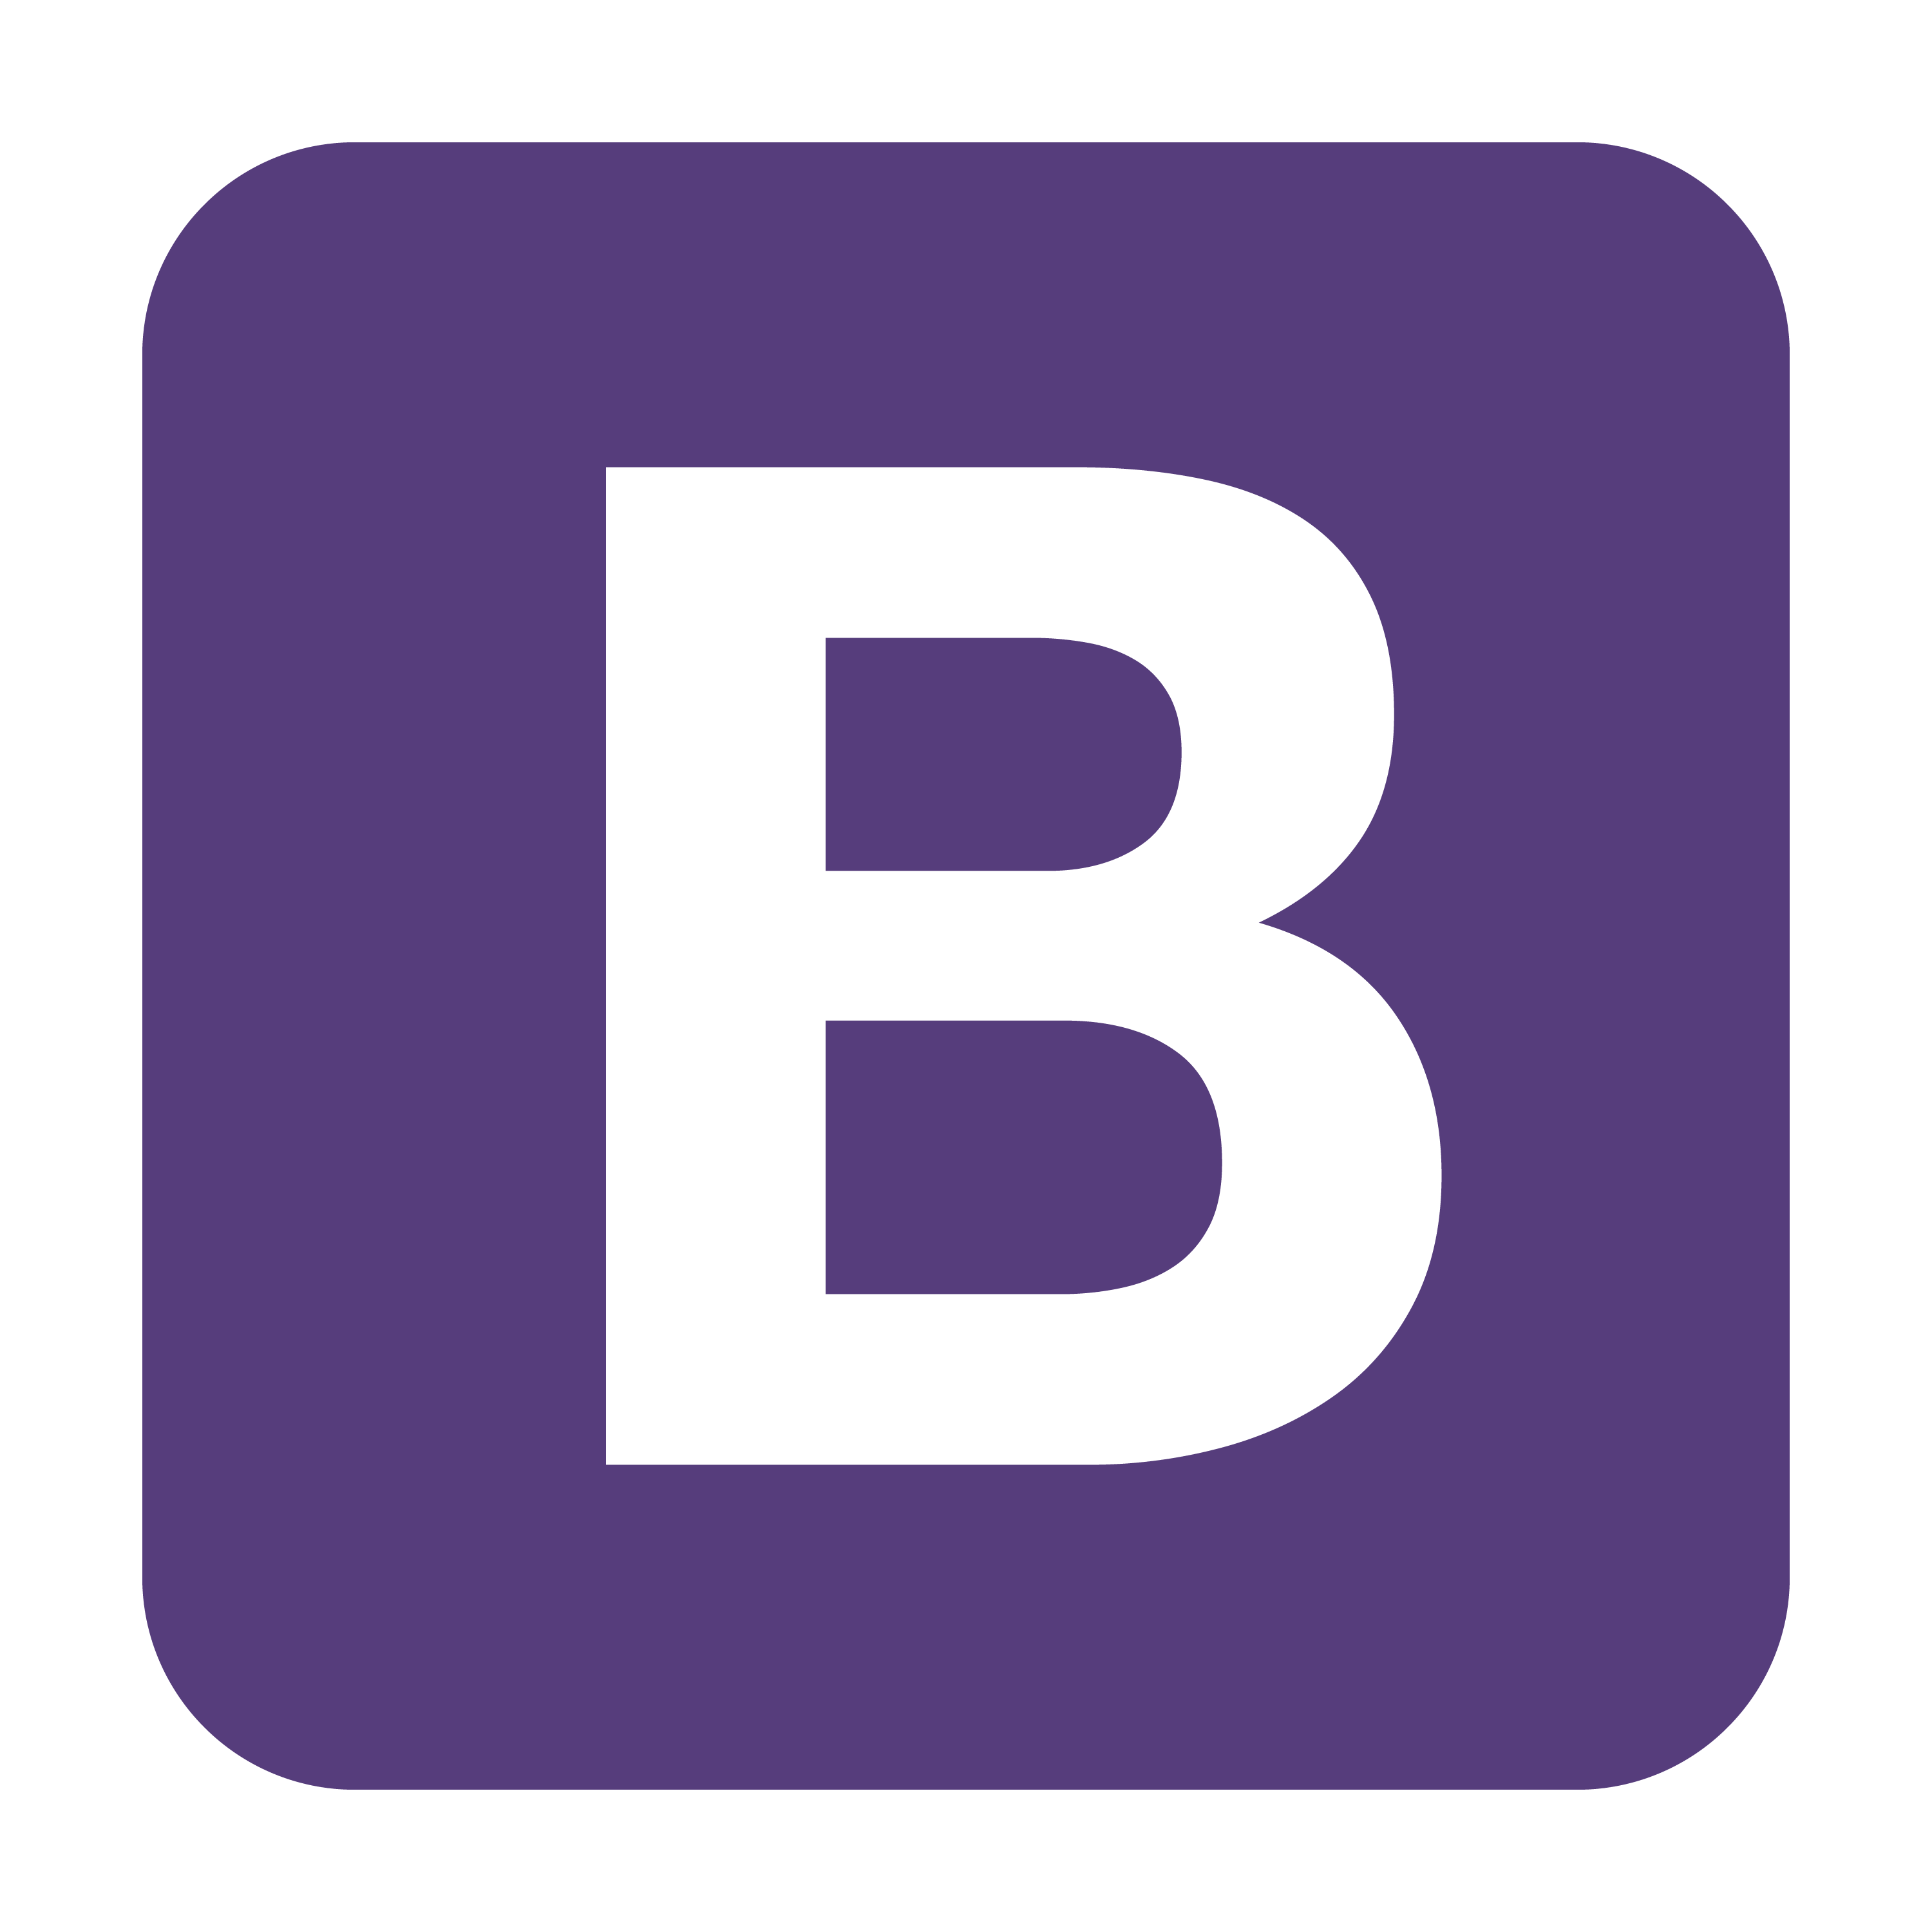 Bootstrap get. Bootstrap. Иконка Bootstrap. Логотип без фона. Фиолетовый значок ВК.